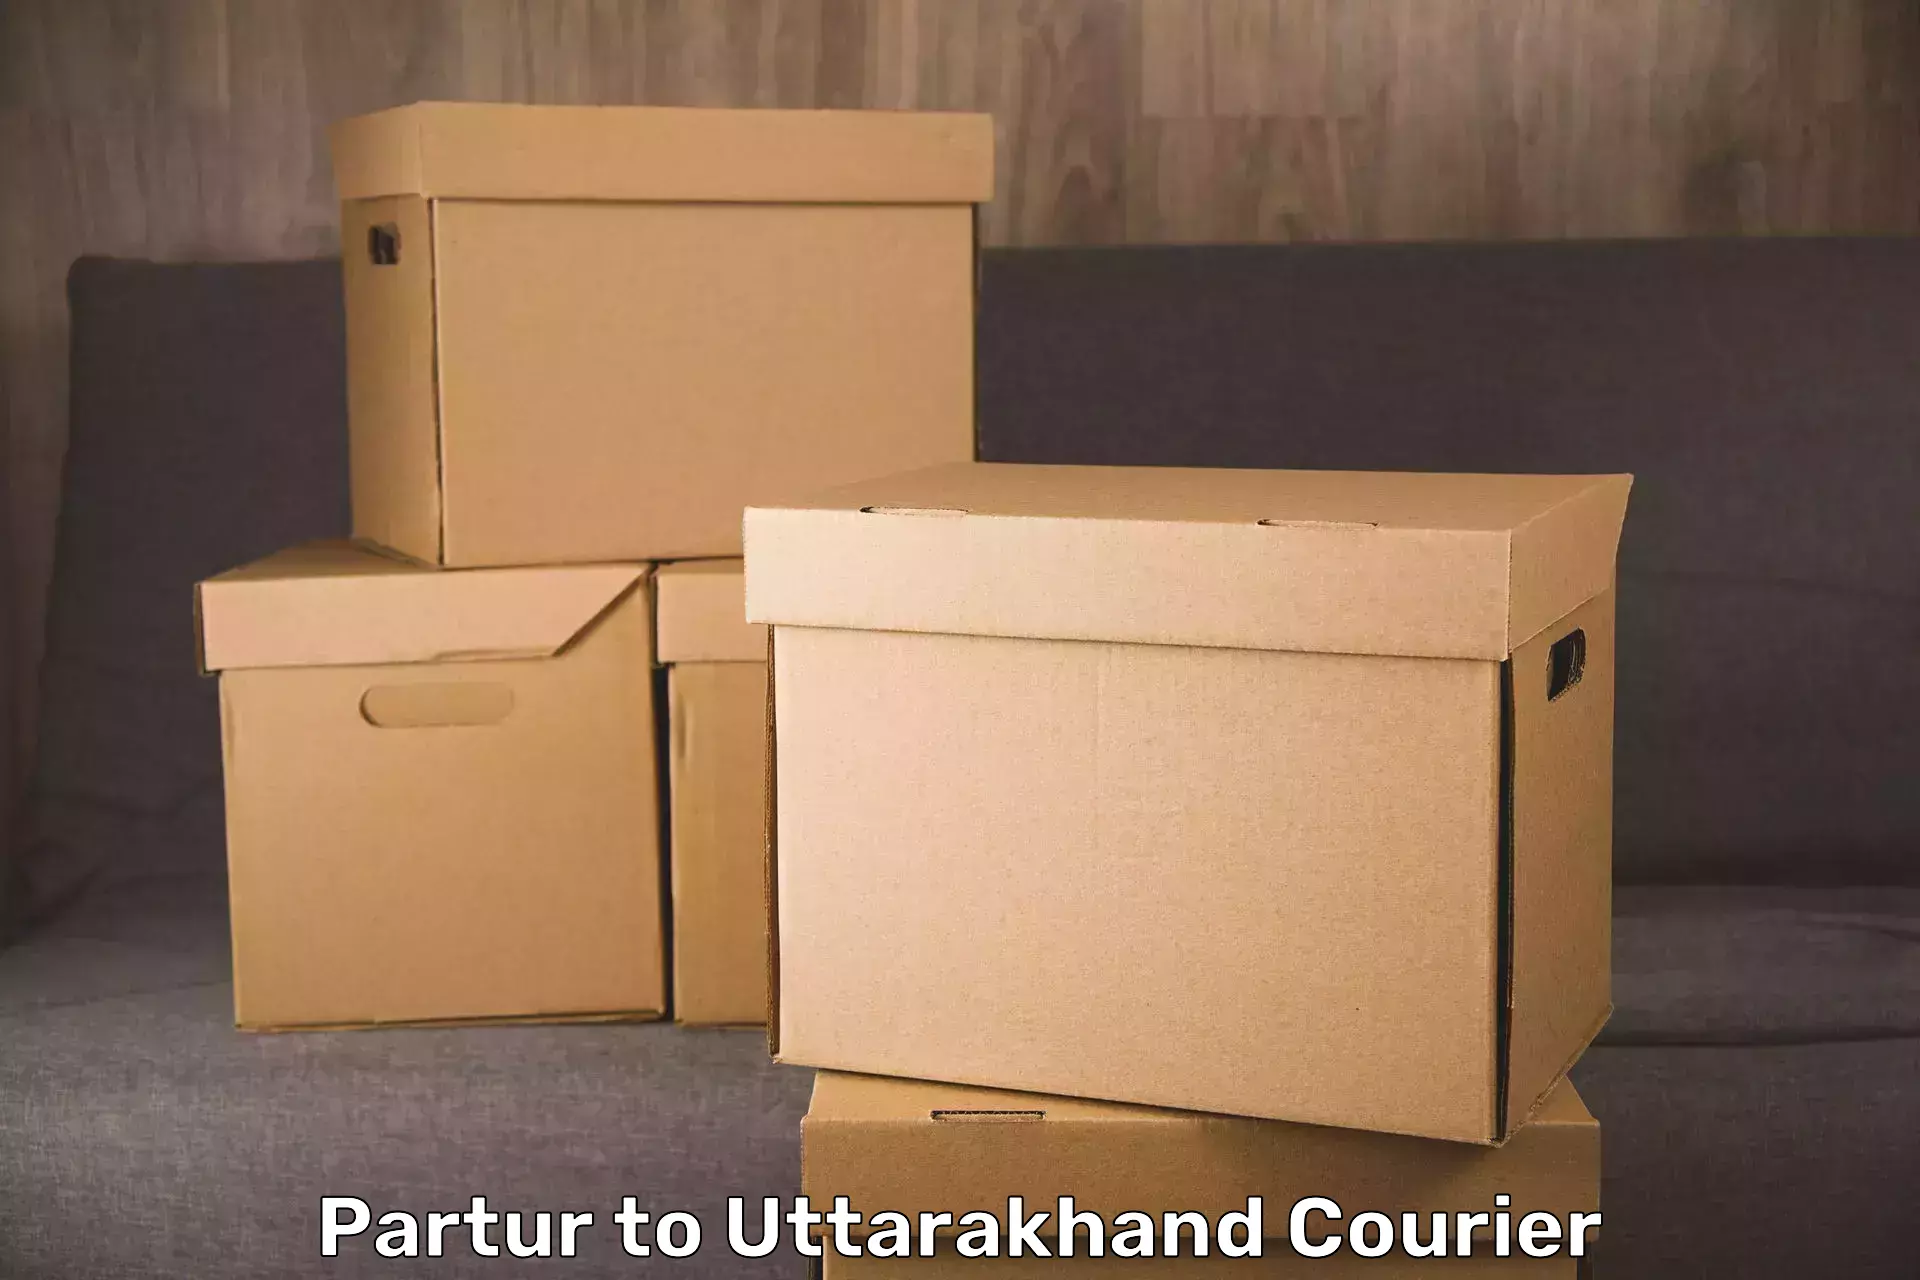 Luggage transit service Partur to Uttarkashi